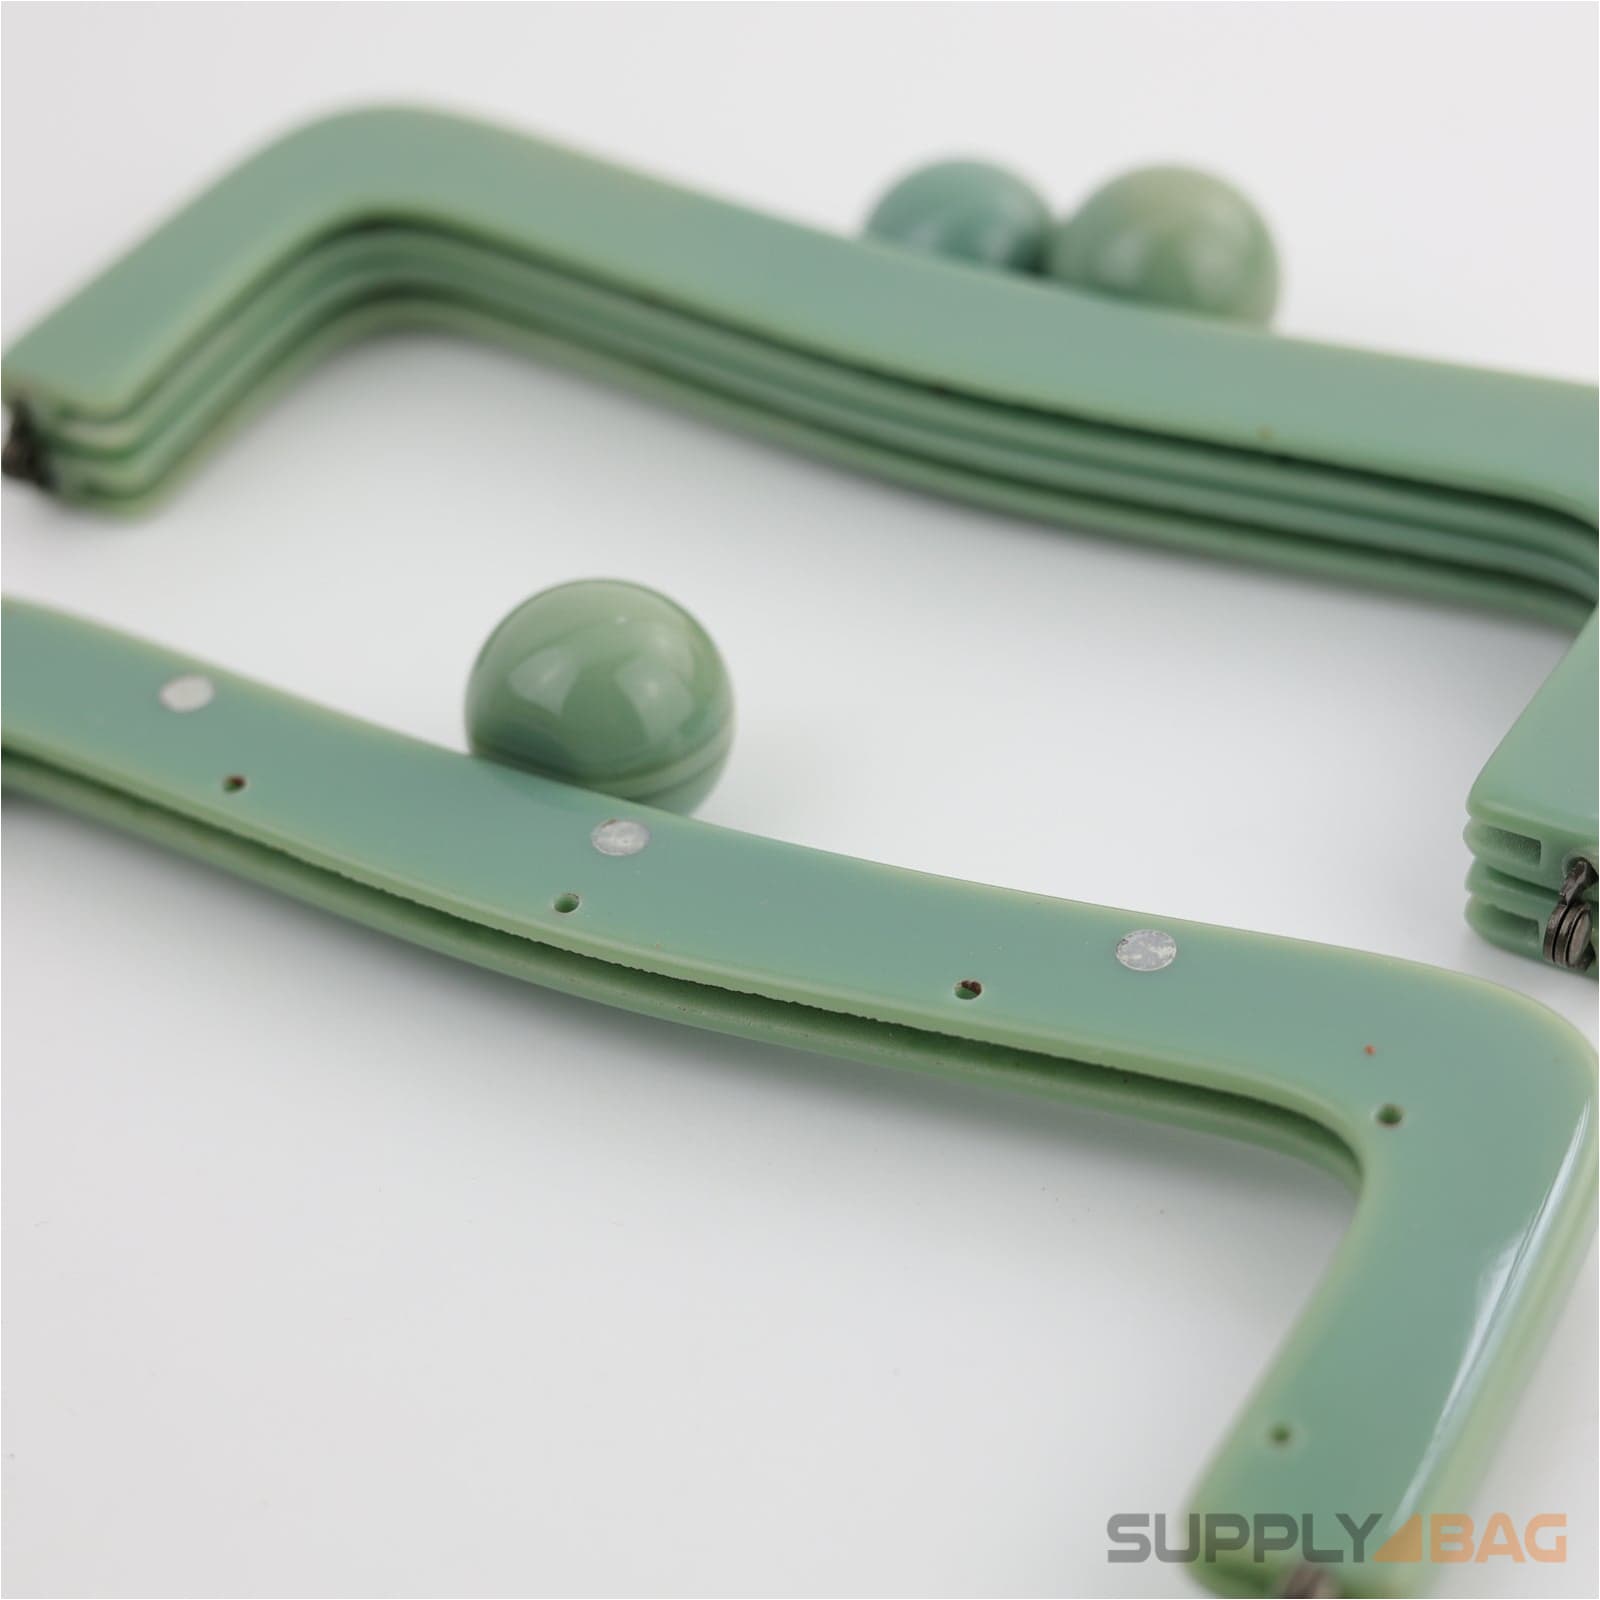 8 1/2 x 3 1/4 inch - Green Acrylic Purse Frame